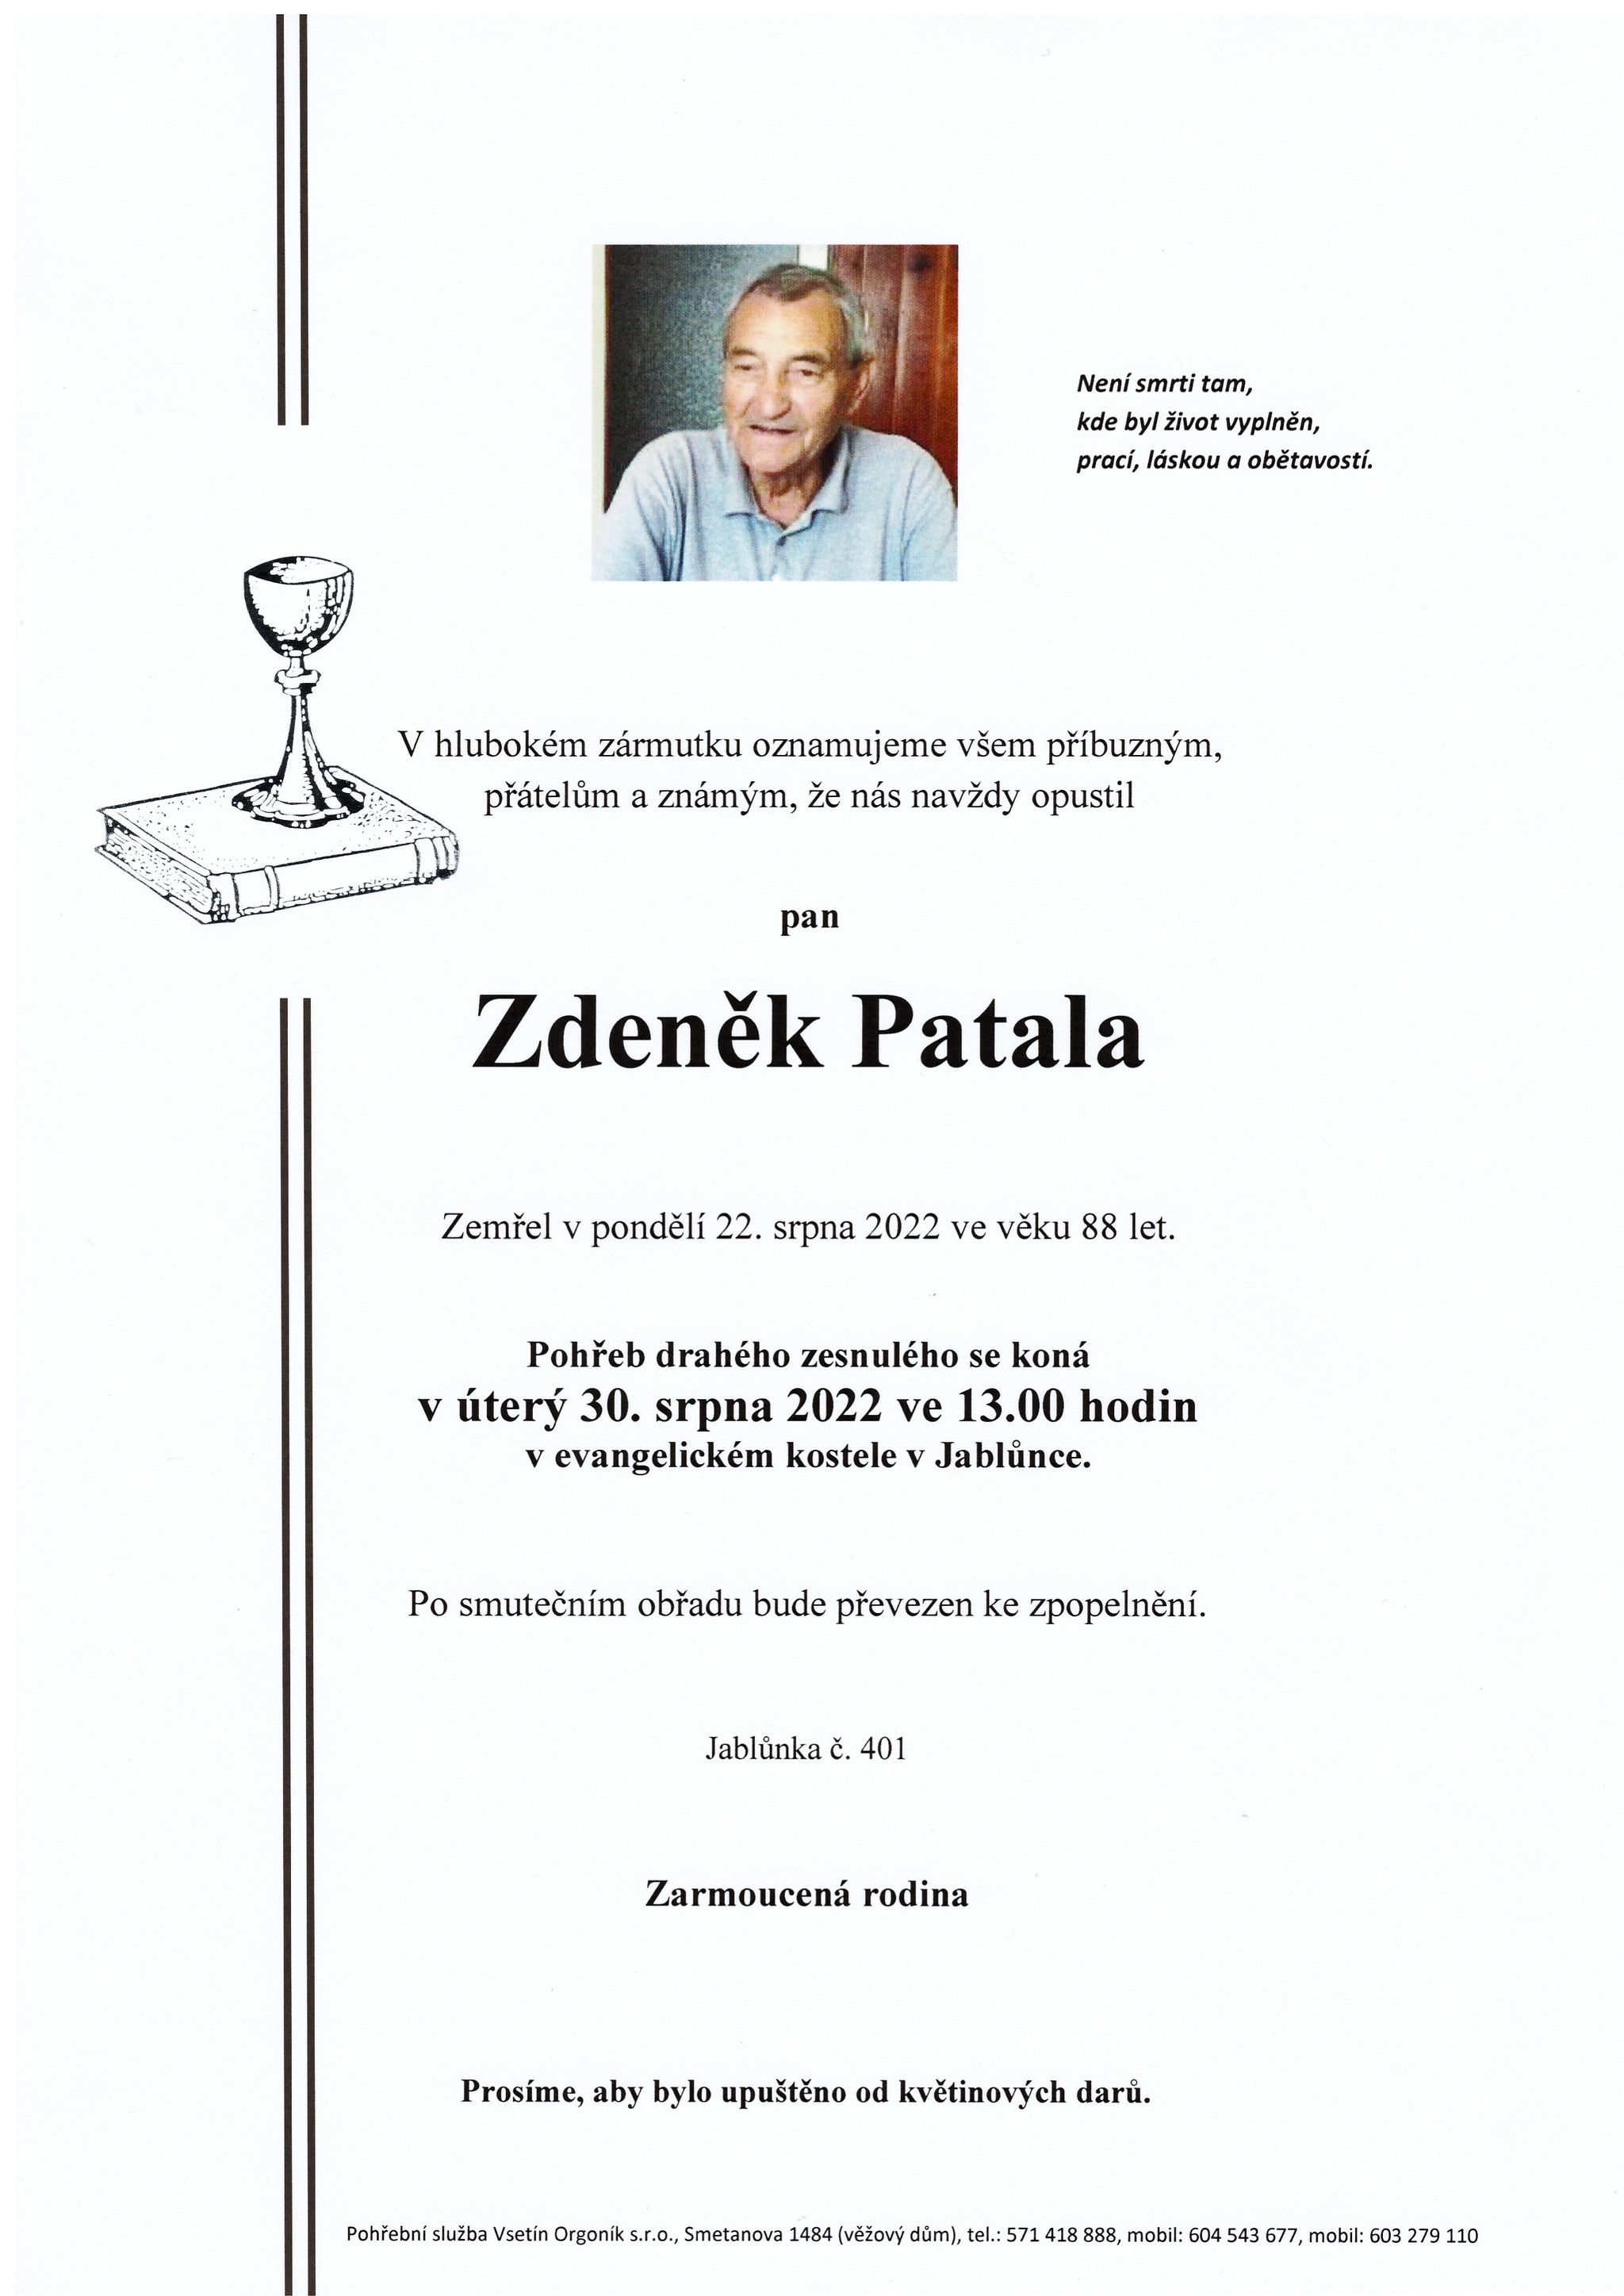 Zdeněk Patala